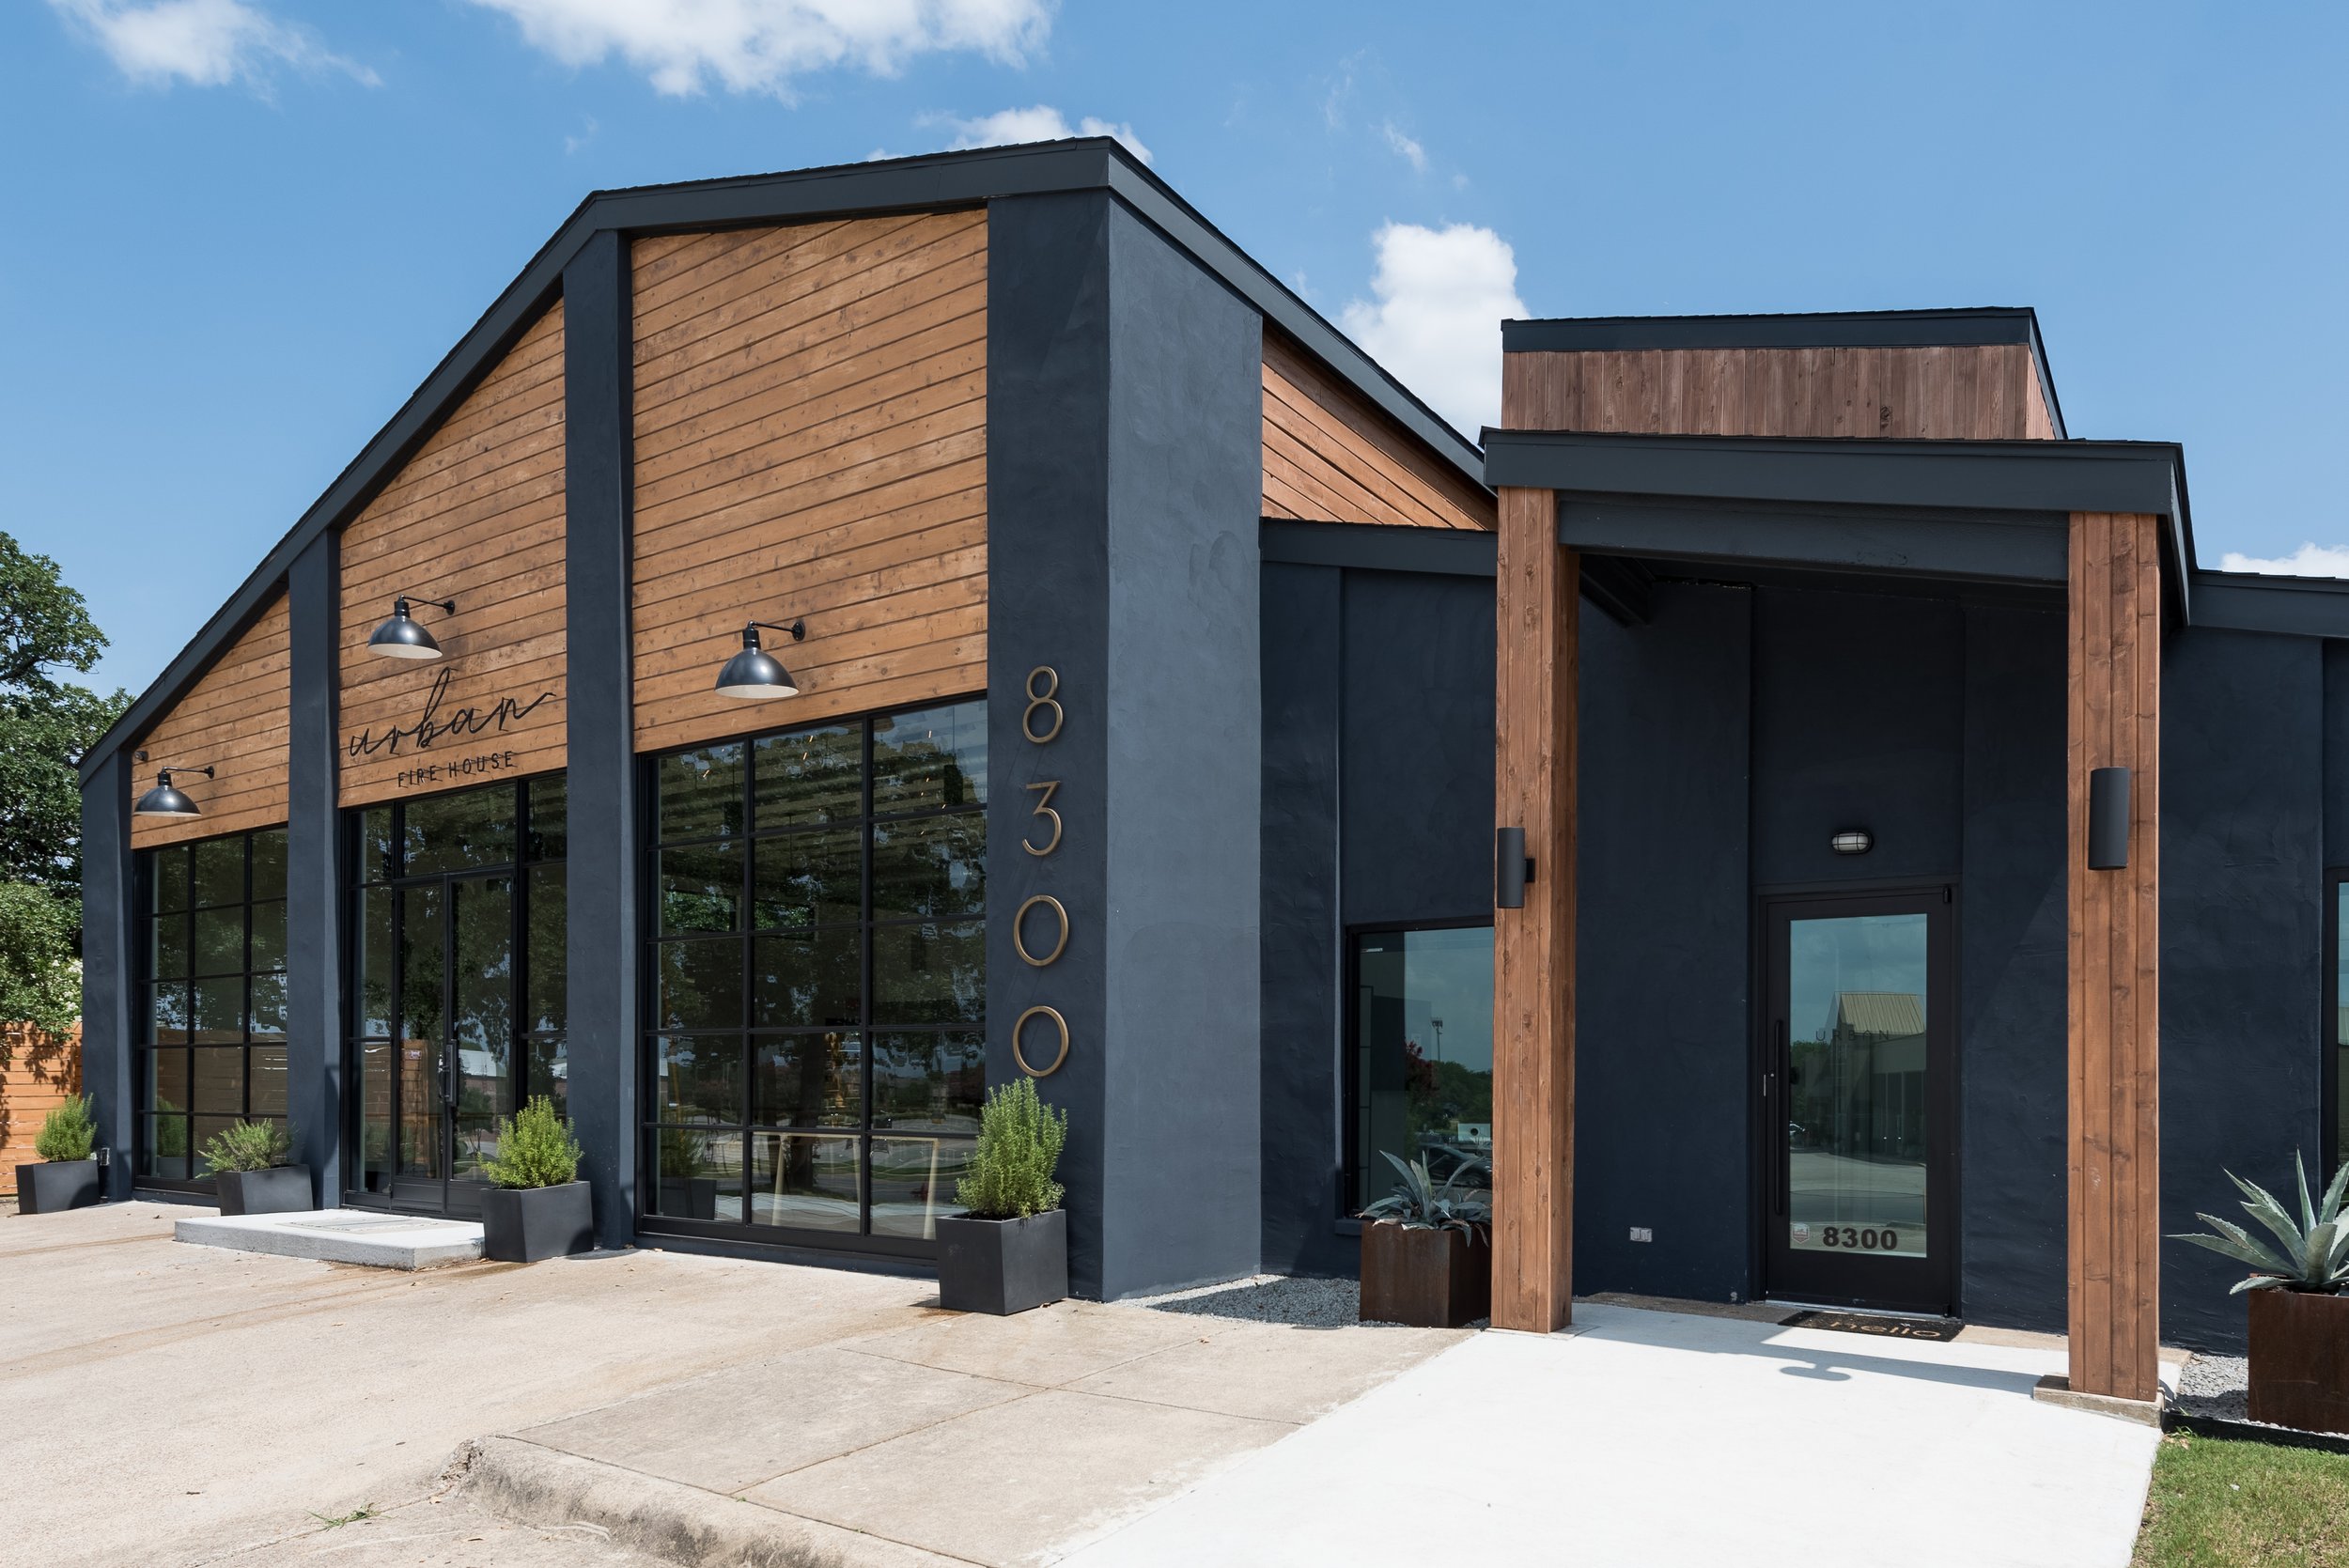 Urbanology Designs – Dallas interior design studio's exterior